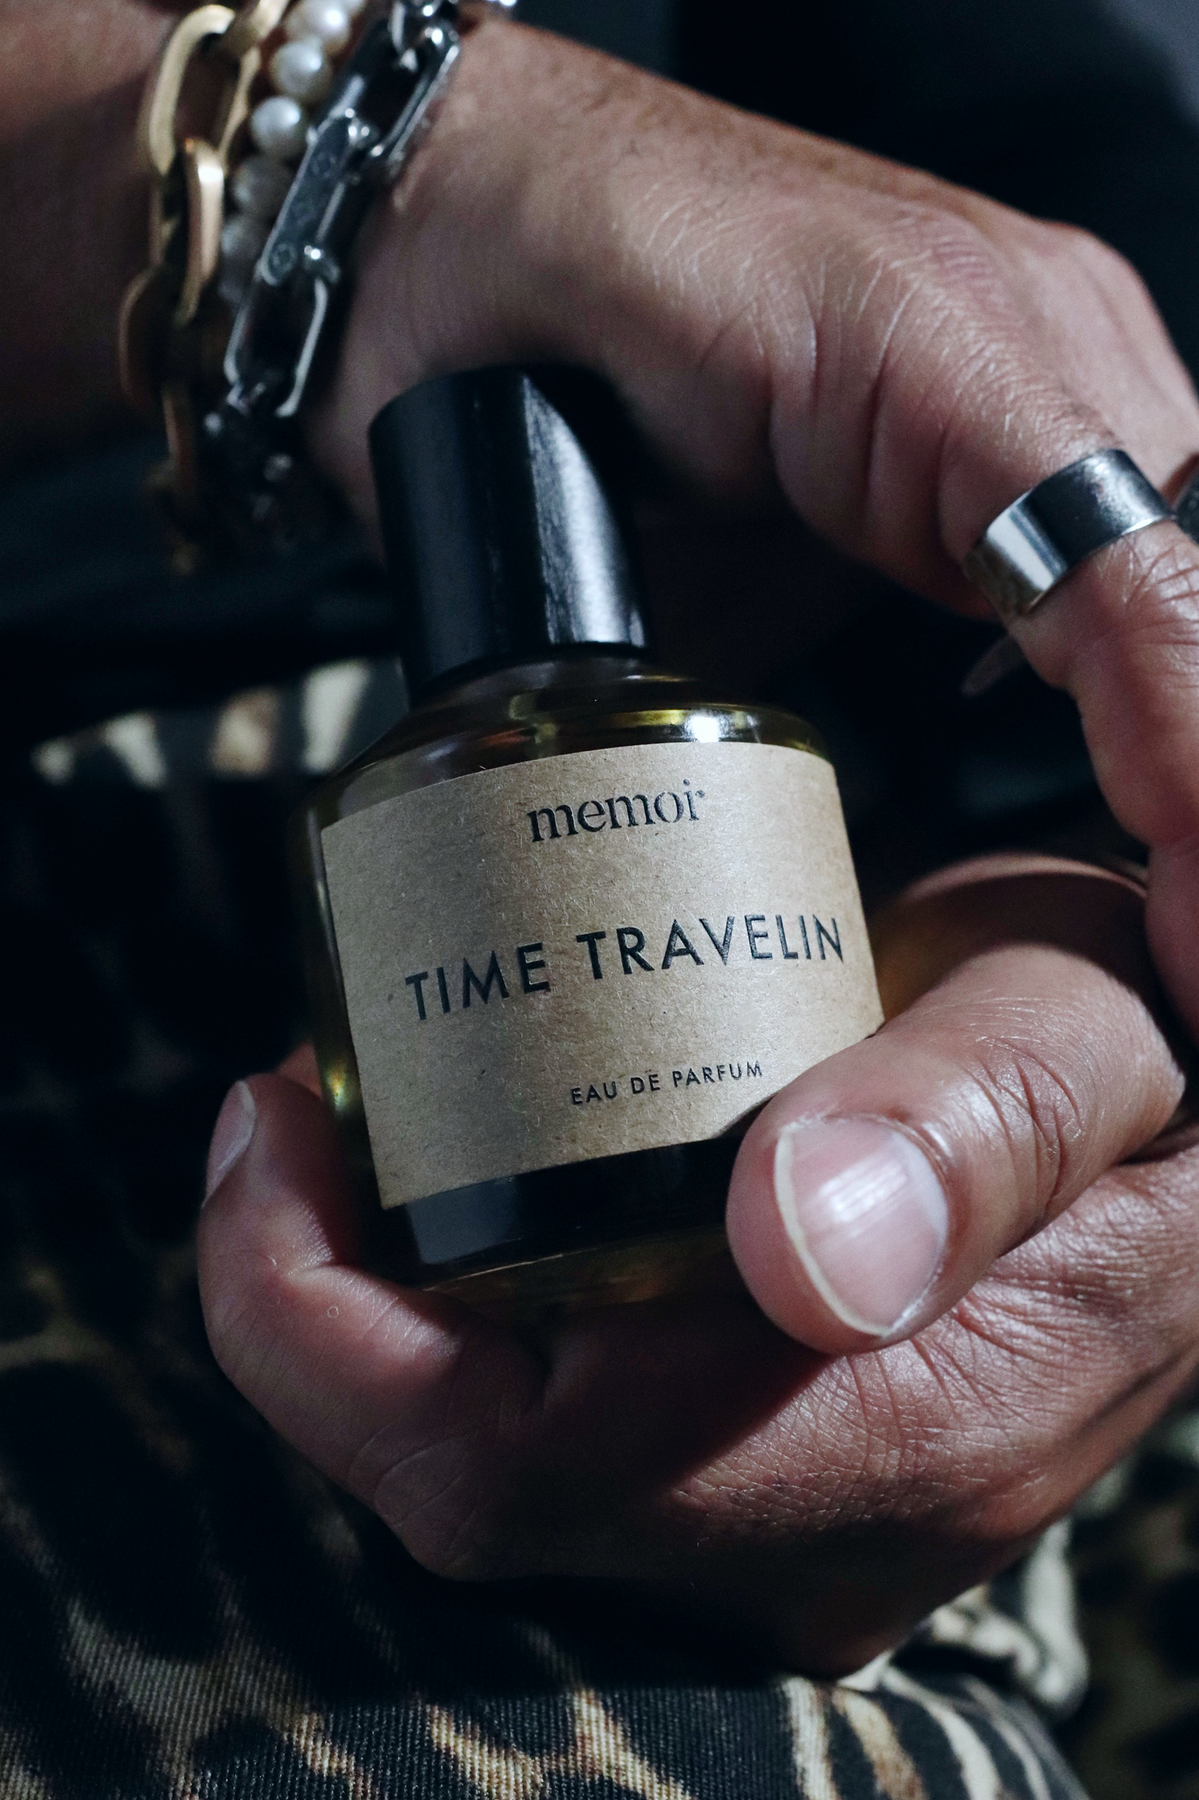 Memoir “Time Travelin” Fragrance